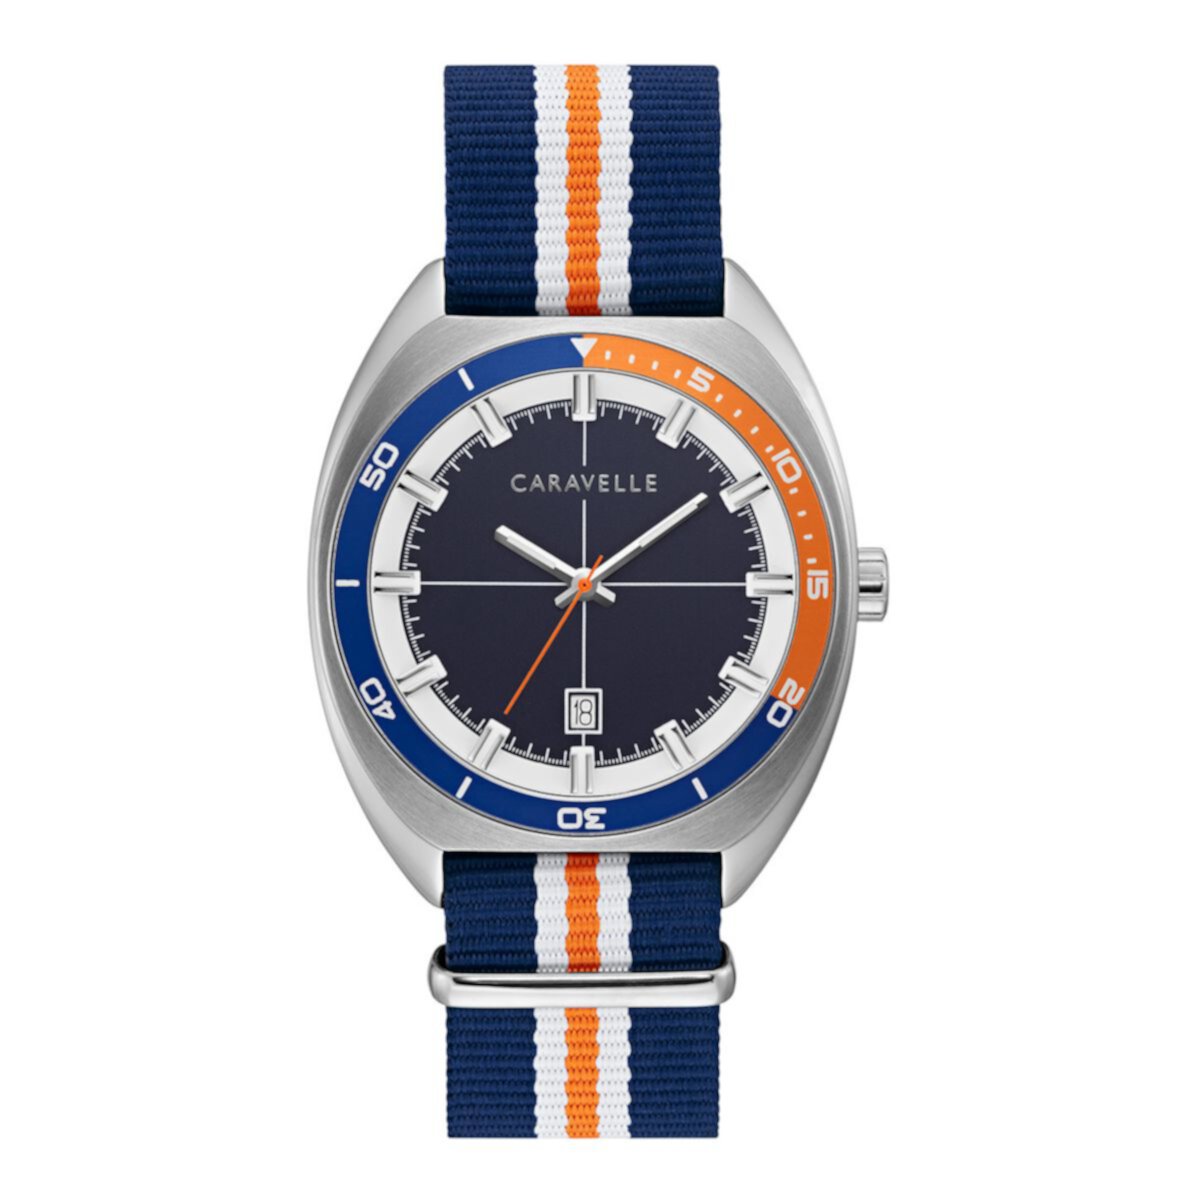 Мужские часы Caravelle by Bulova с синим / оранжевым нейлоновым ремешком - 43B166 Caravelle